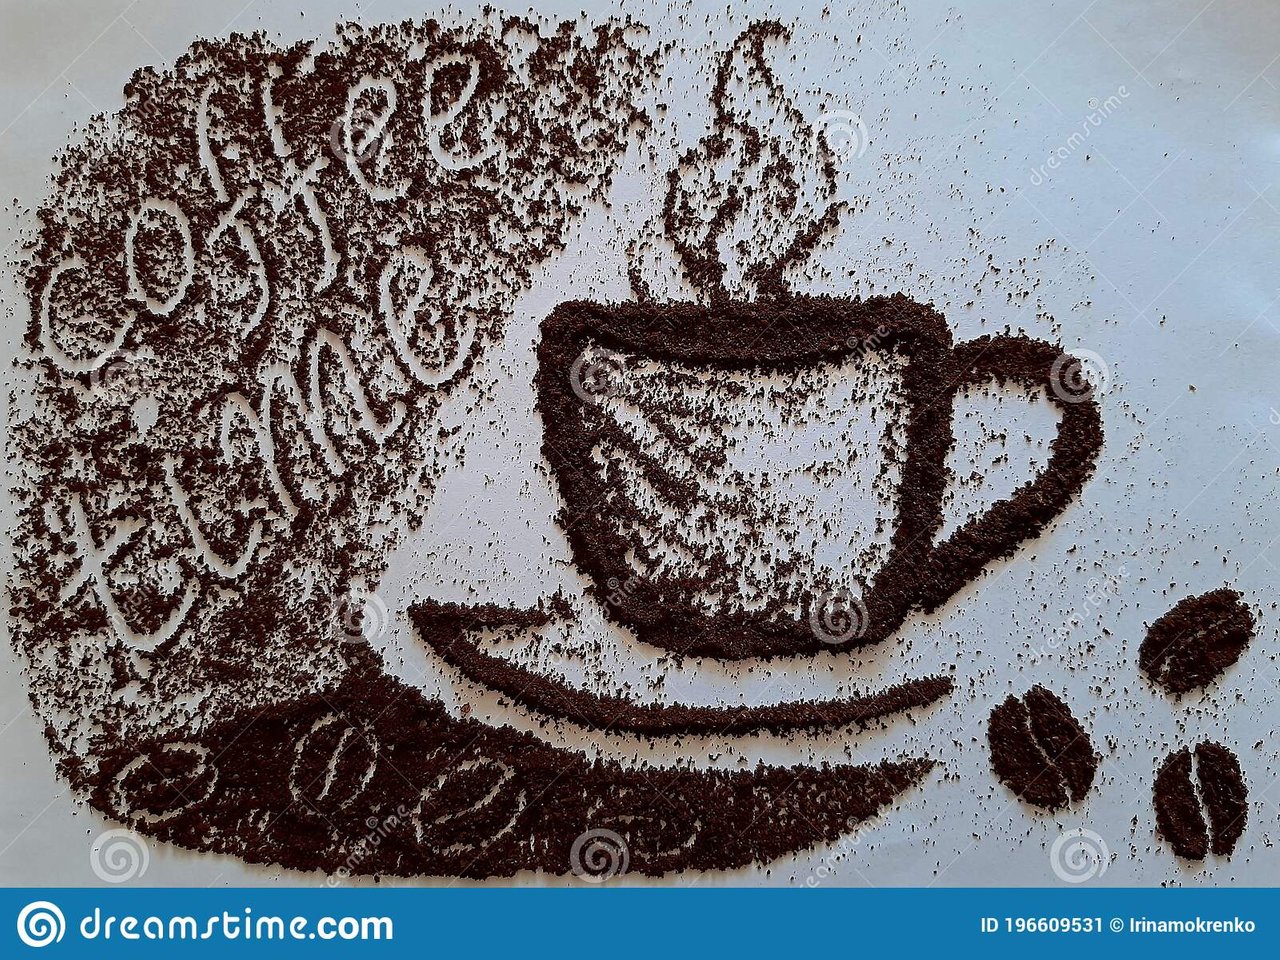 dibujo-de-una-copa-y-inscripción-sobre-un-fondo-café-molido-negro-en-polvo-papel-blanco-imagen-abstracta-elemento-decorativo-196609531.jpg